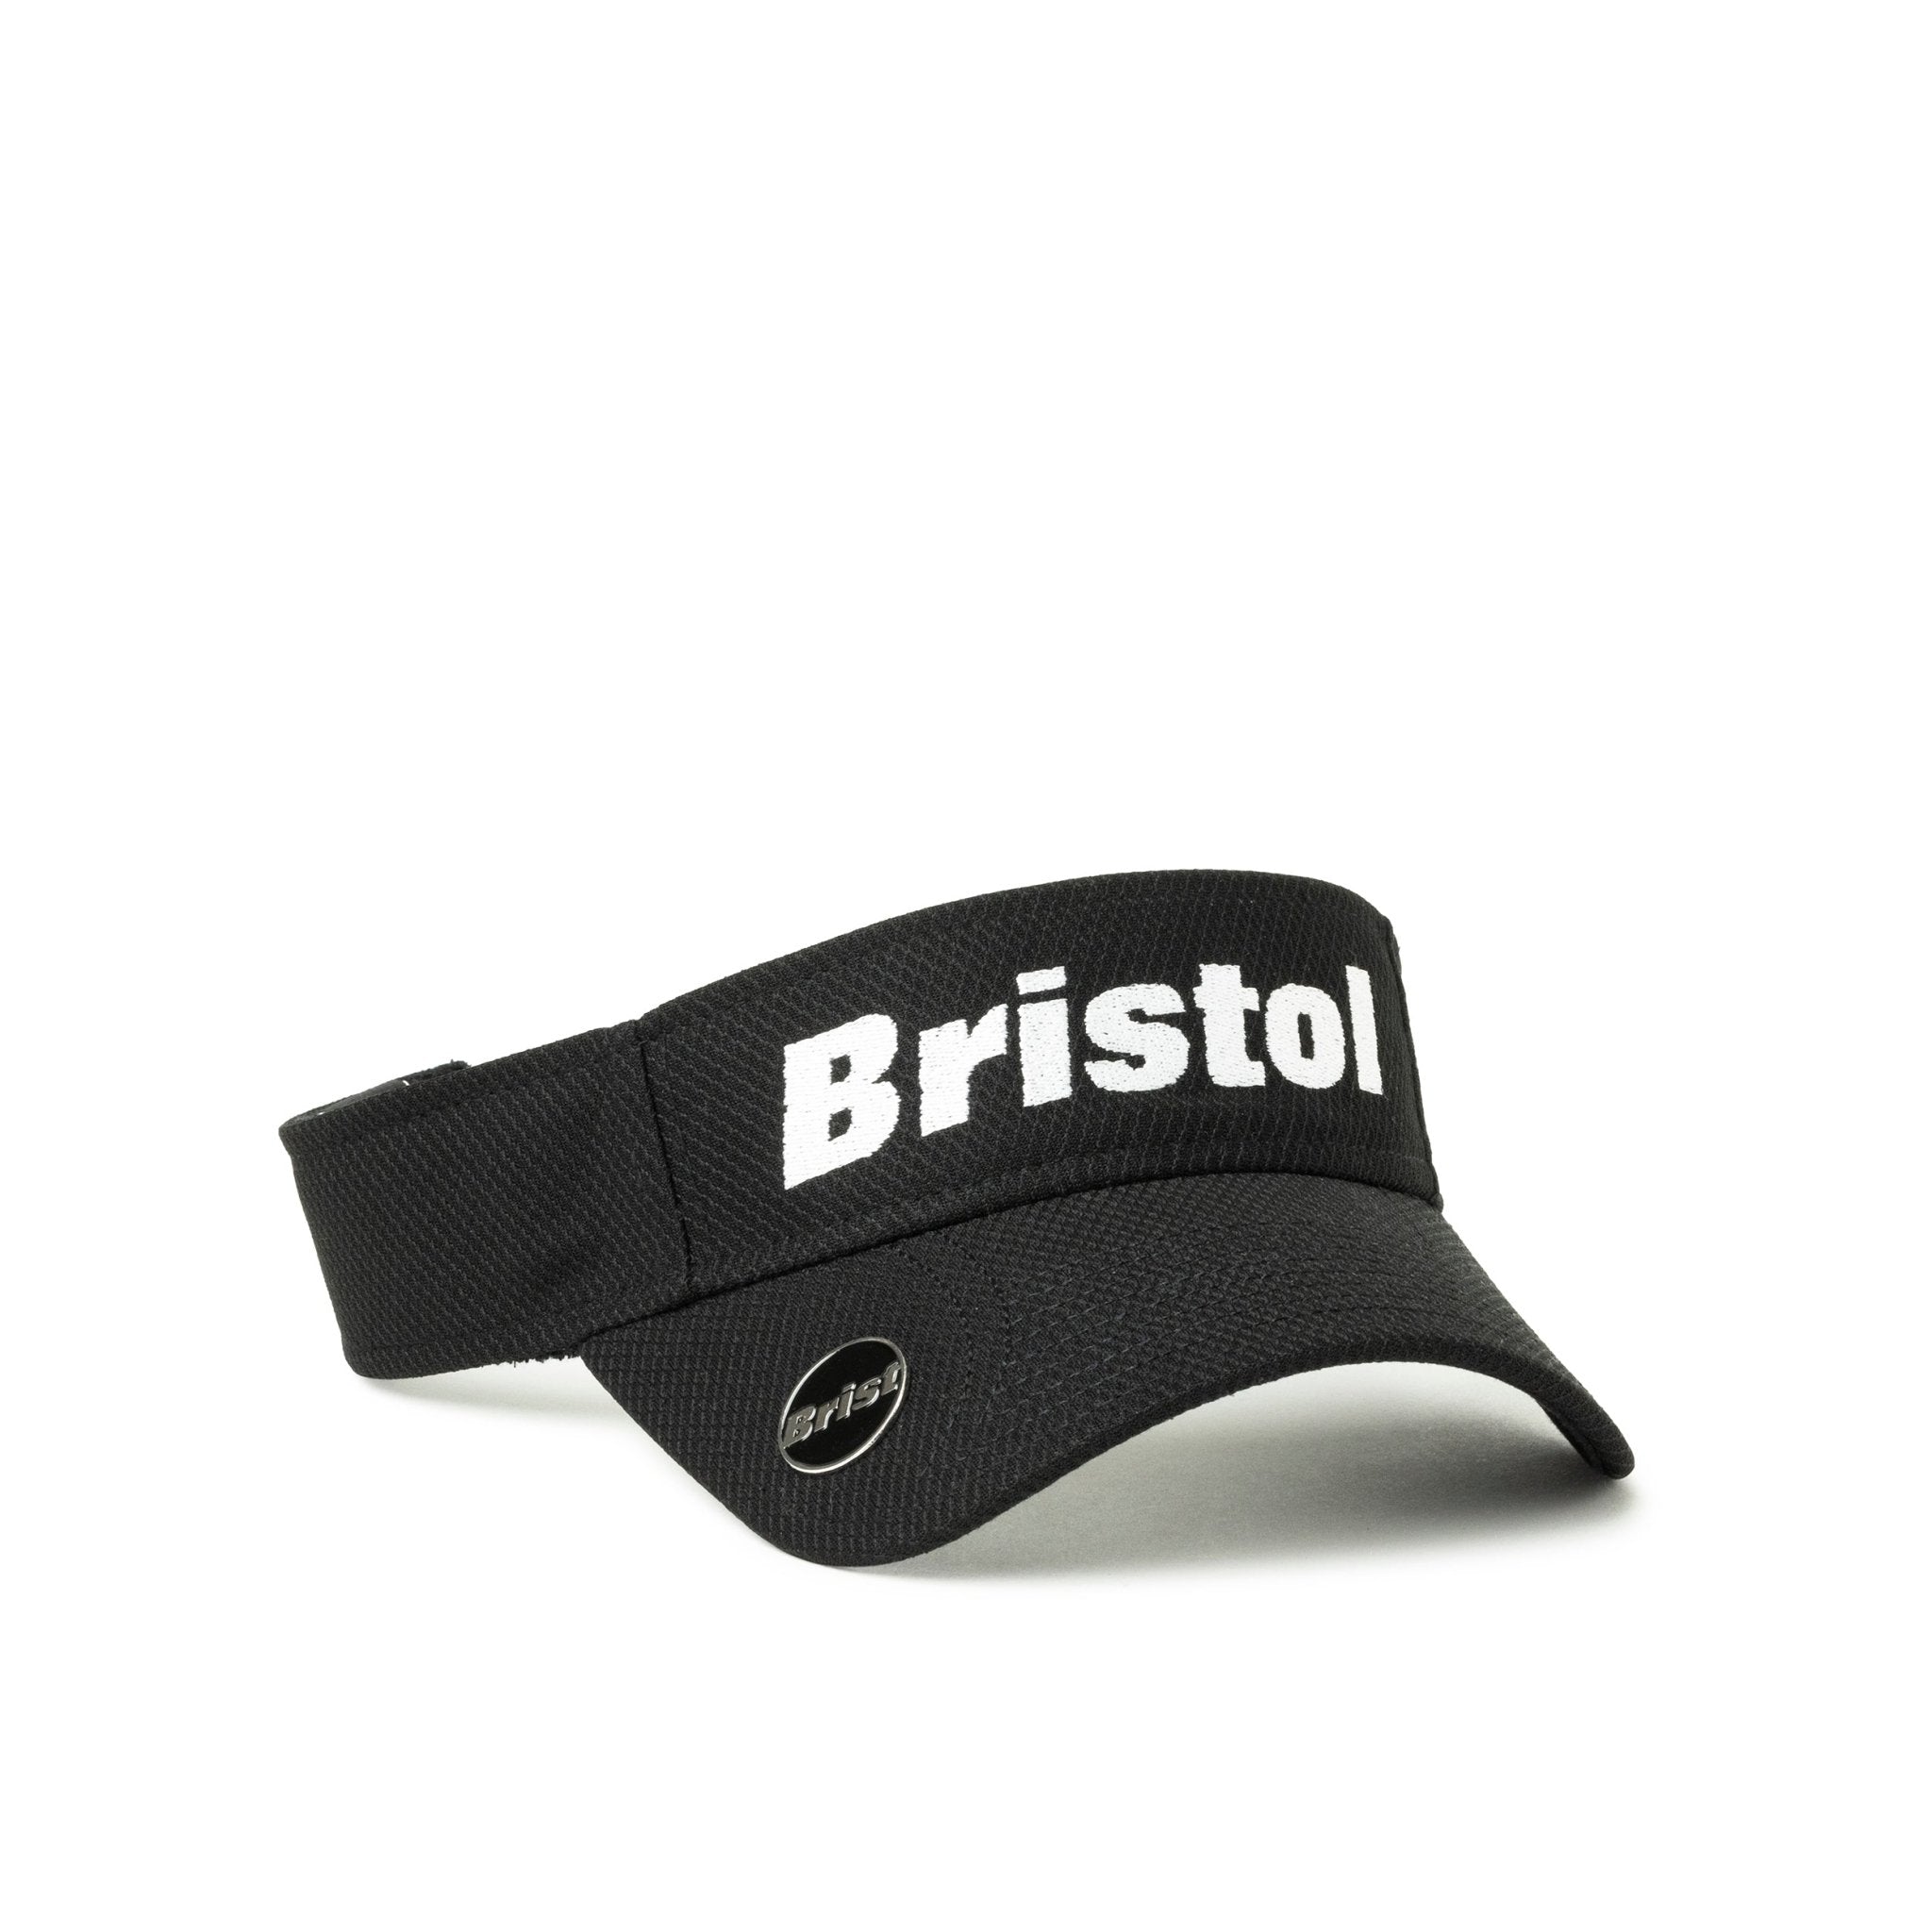 【ゴルフ】 サンバイザー On Par F.C.Real Bristol ロゴ ブラック